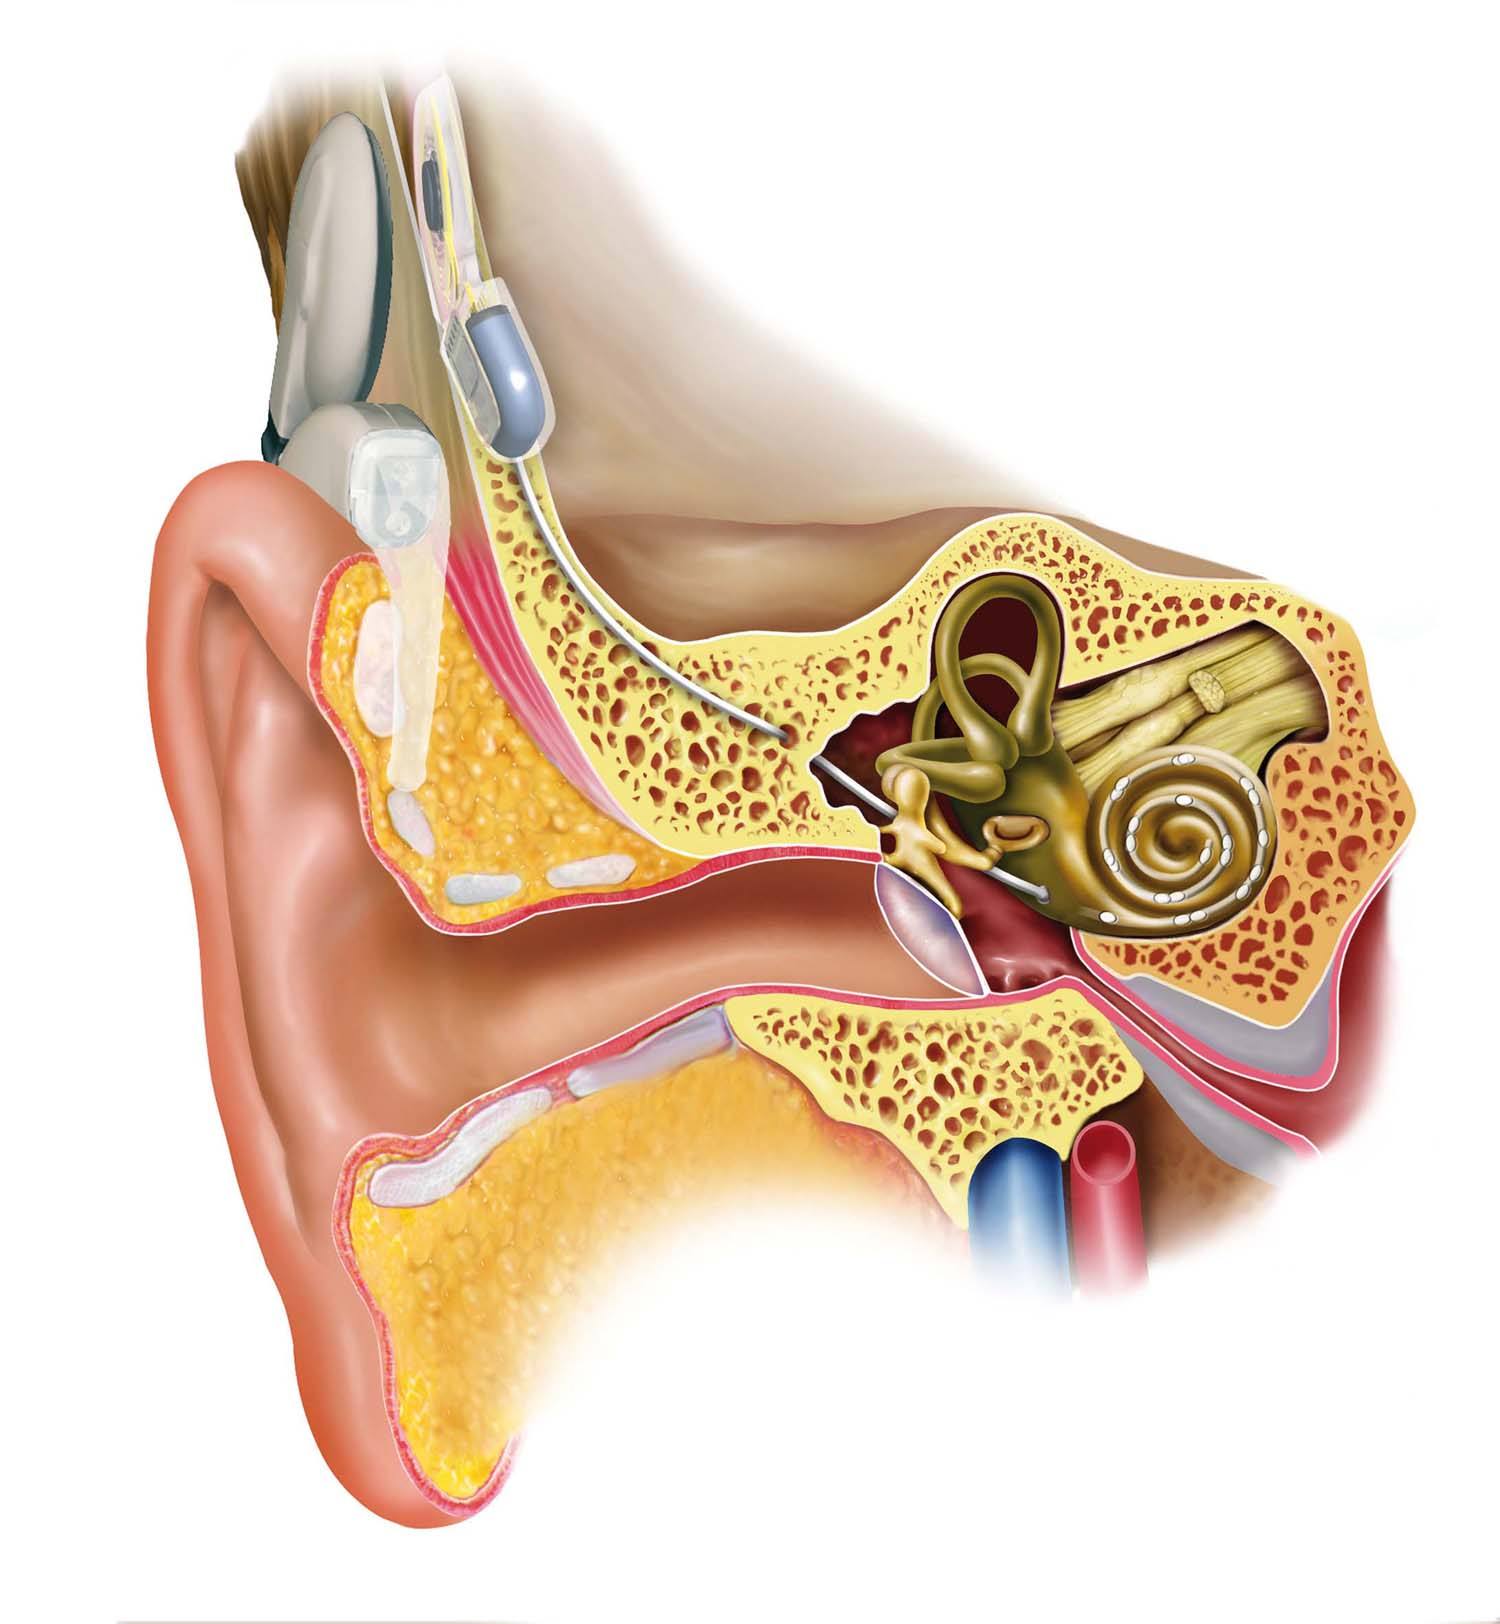 电子耳蜗:先天性耳聋患儿的福音